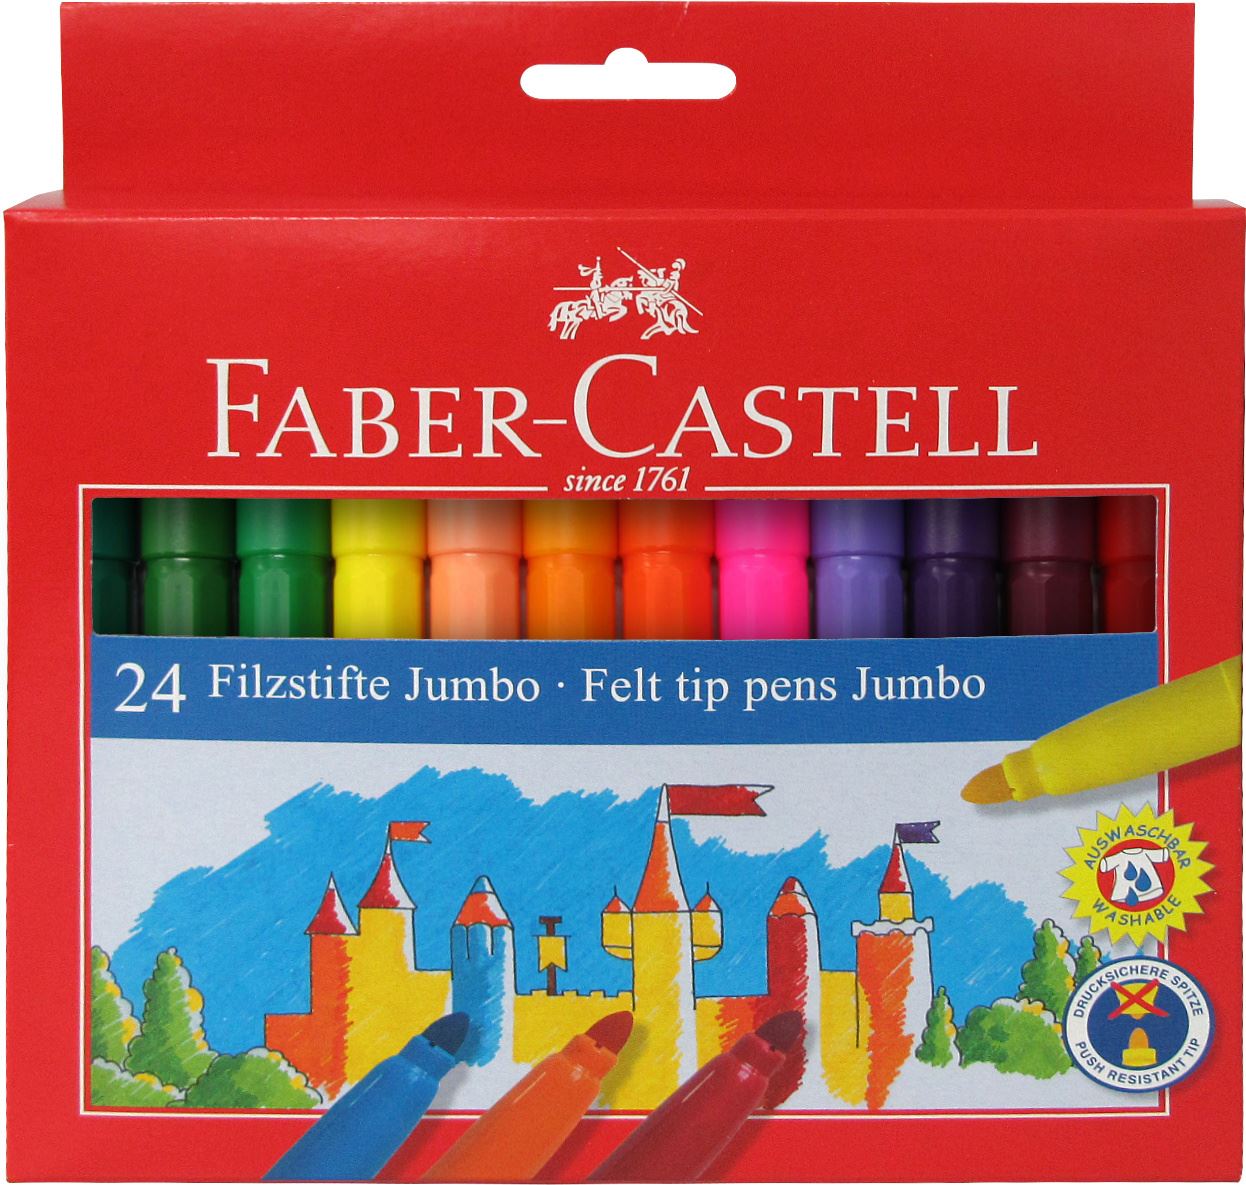 Faber-Castell - Rotulador Jumbo, estuche cartón, 24 piezas